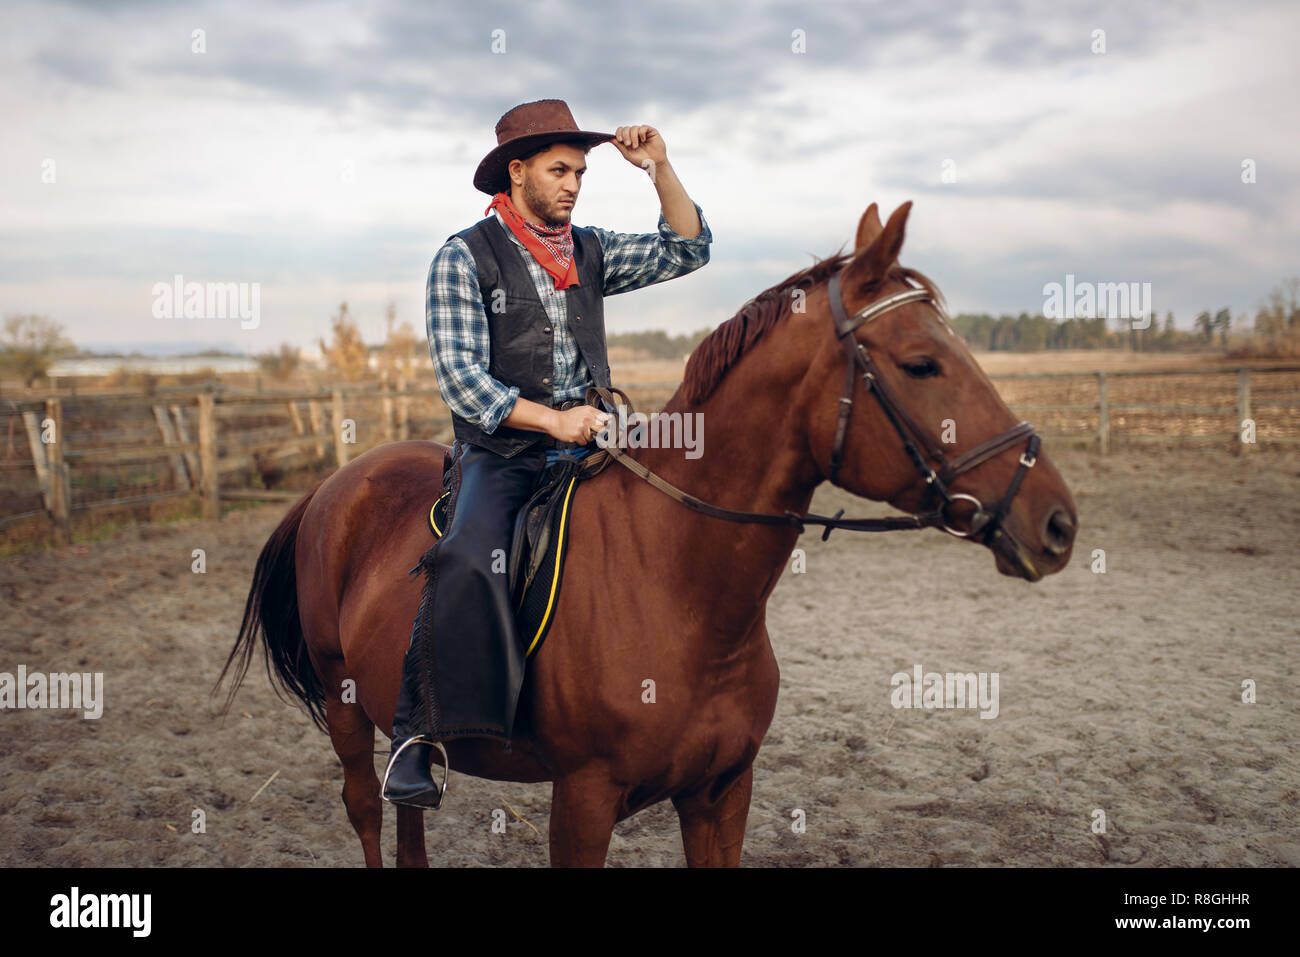 Cowboy reiten ein Pferd in Texas Land, Limousine auf Hintergrund, Western.  Vintage männliche Person auf dem Pferd, wild west Abenteuer Stockfotografie  - Alamy